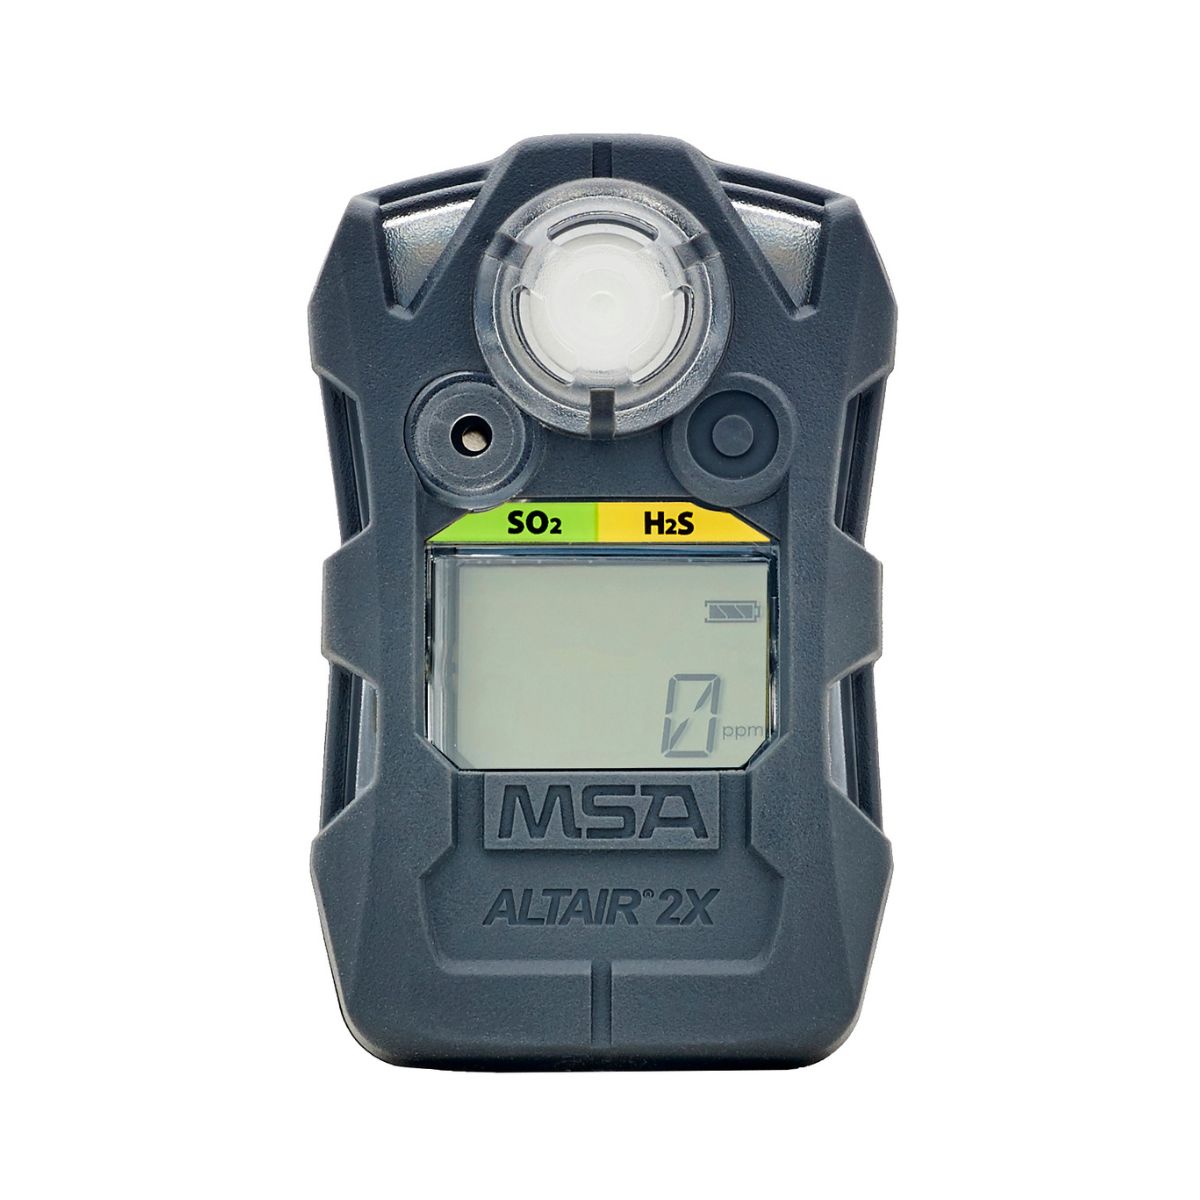 MSA ALTAIR 2XT 2 Gas Detector, SO2 & H2S 10153985